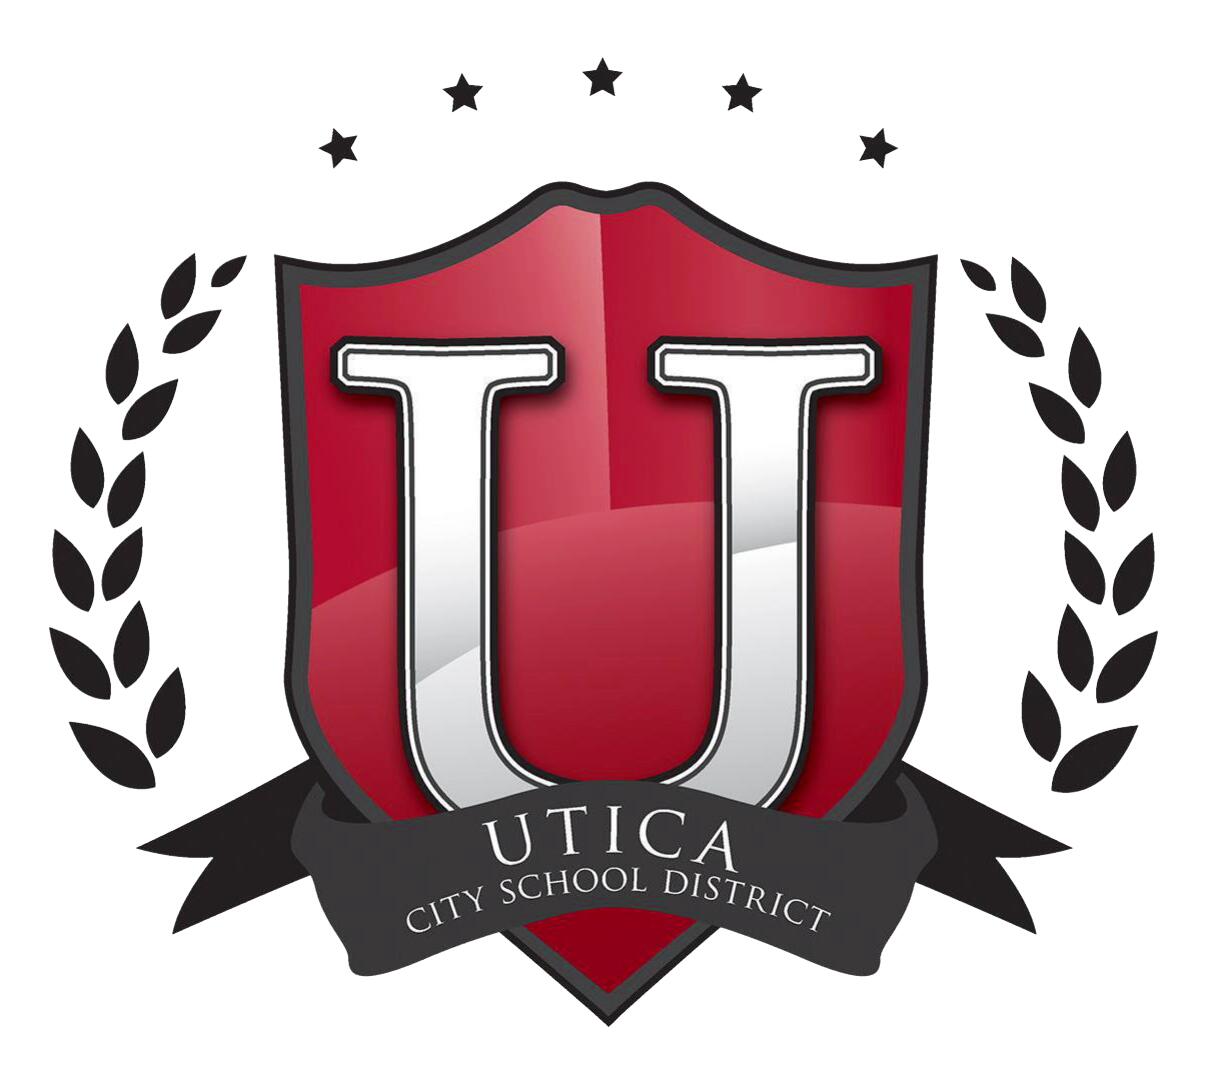 Školski okrug grada Utica